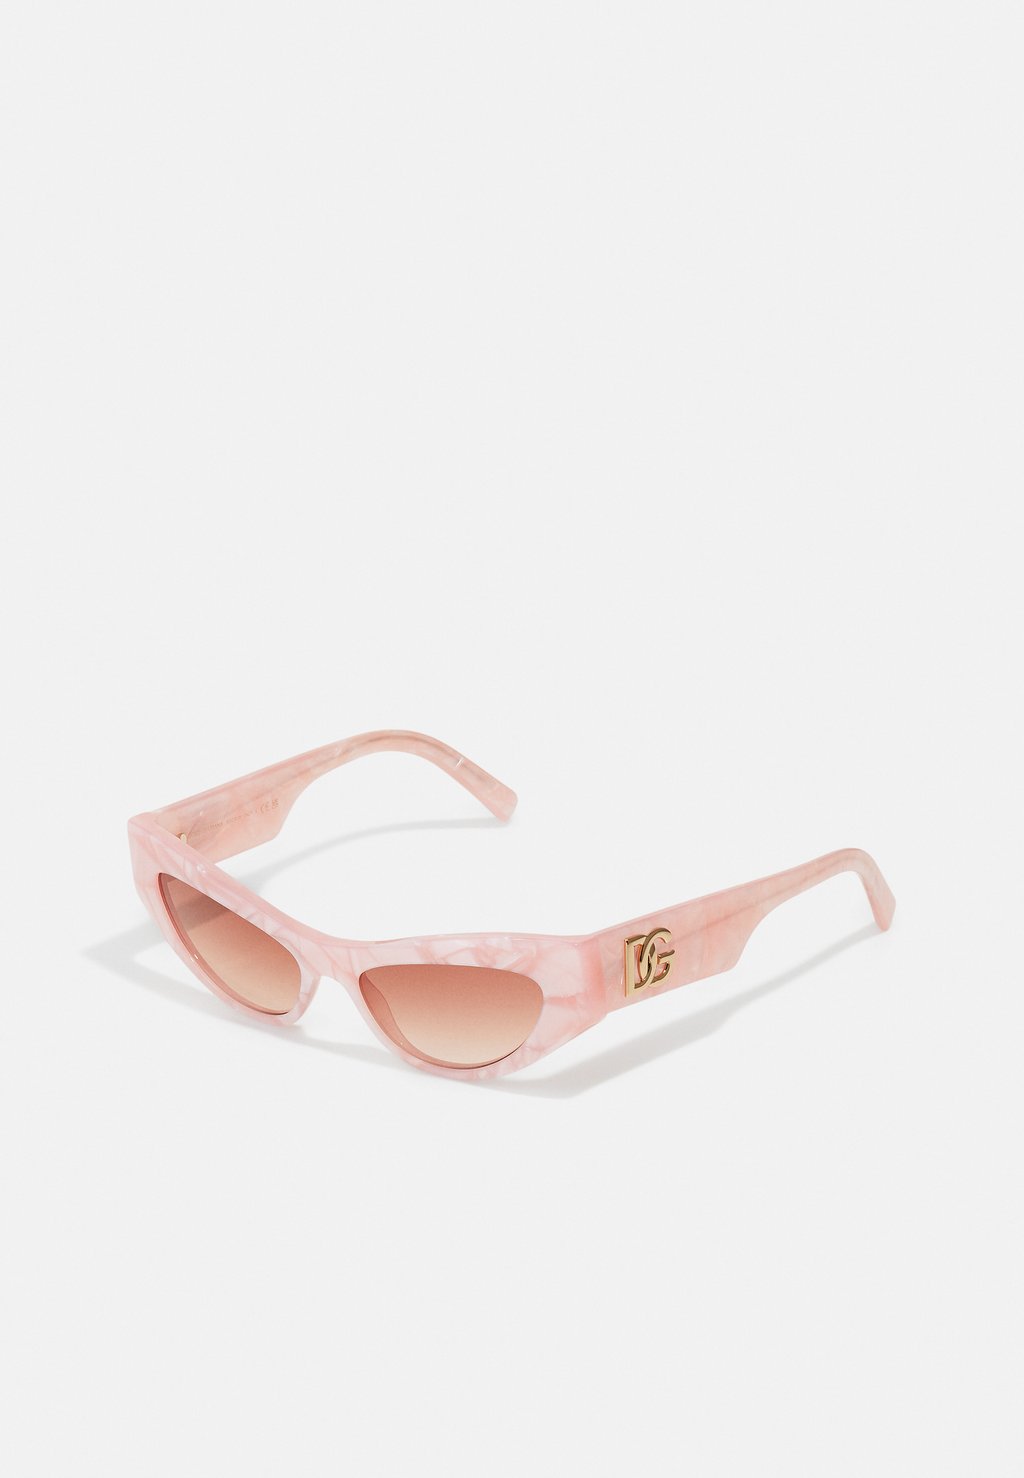 Солнцезащитные очки Dolce&Gabbana, перламутровый розовый